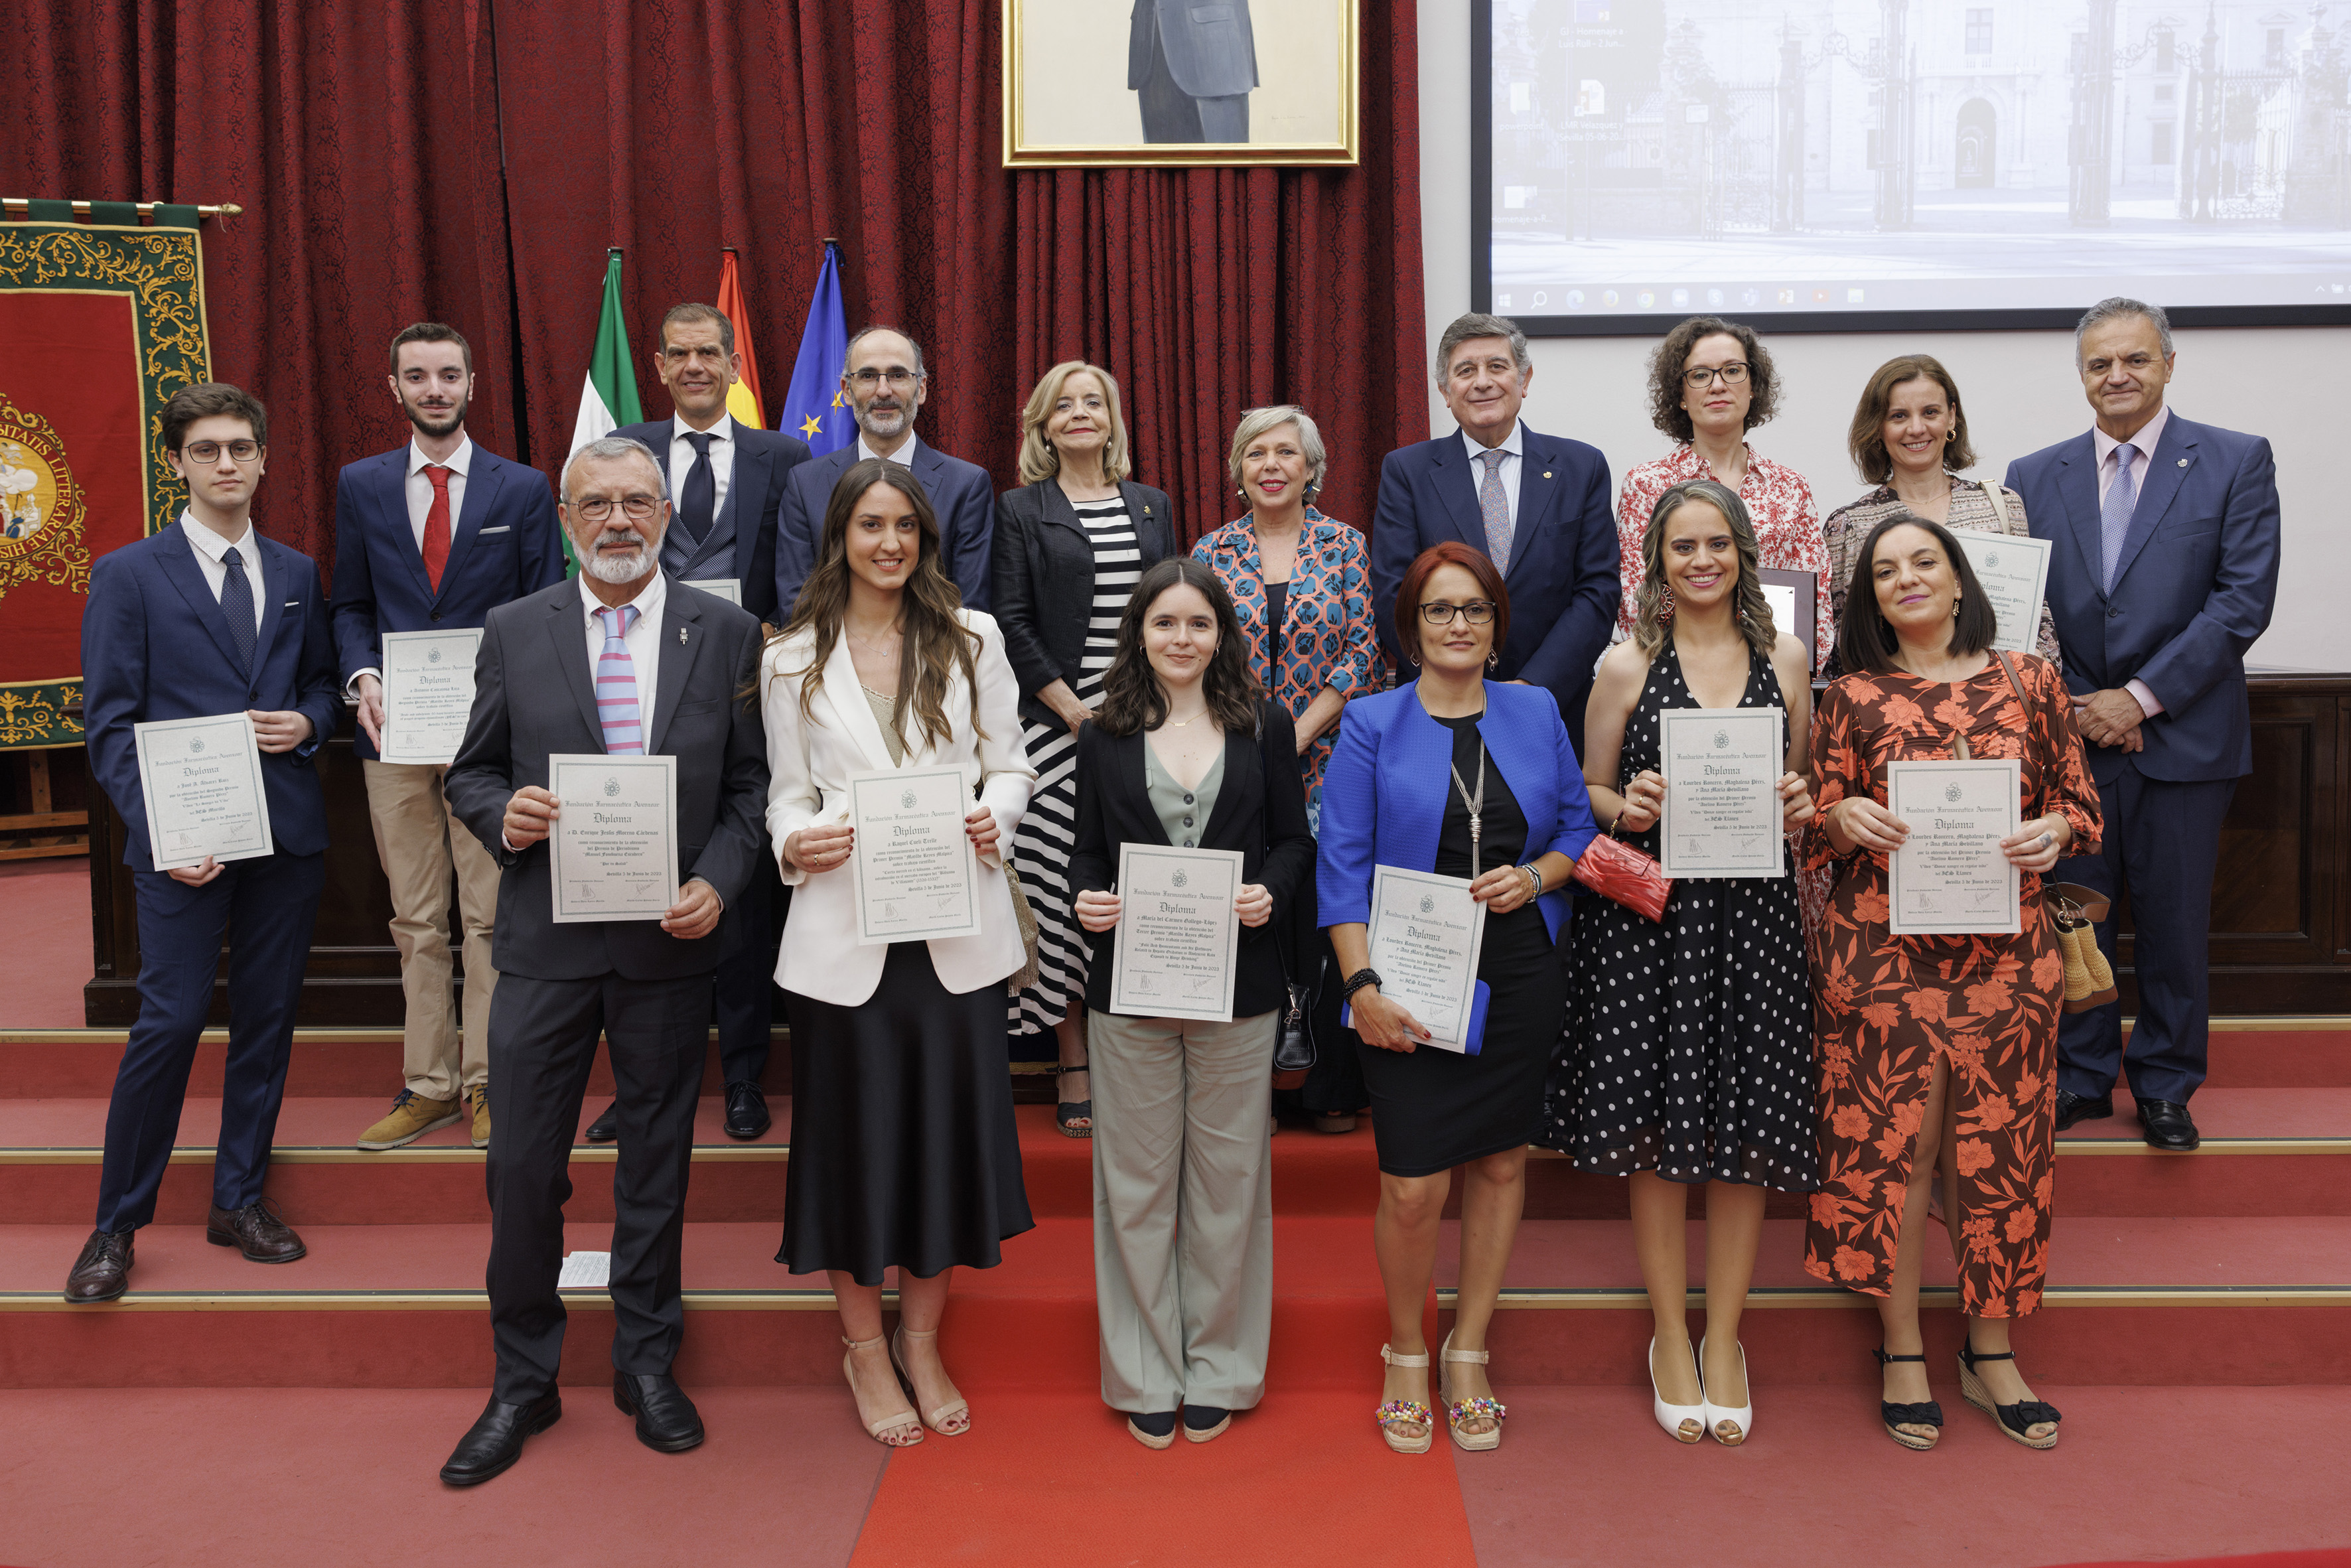 La Fundación Farmacéutica Avenzoar reconoce más de dos décadas de divulgación sanitaria del Aula de la Salud del Colegio de Farmacéuticos de Sevilla